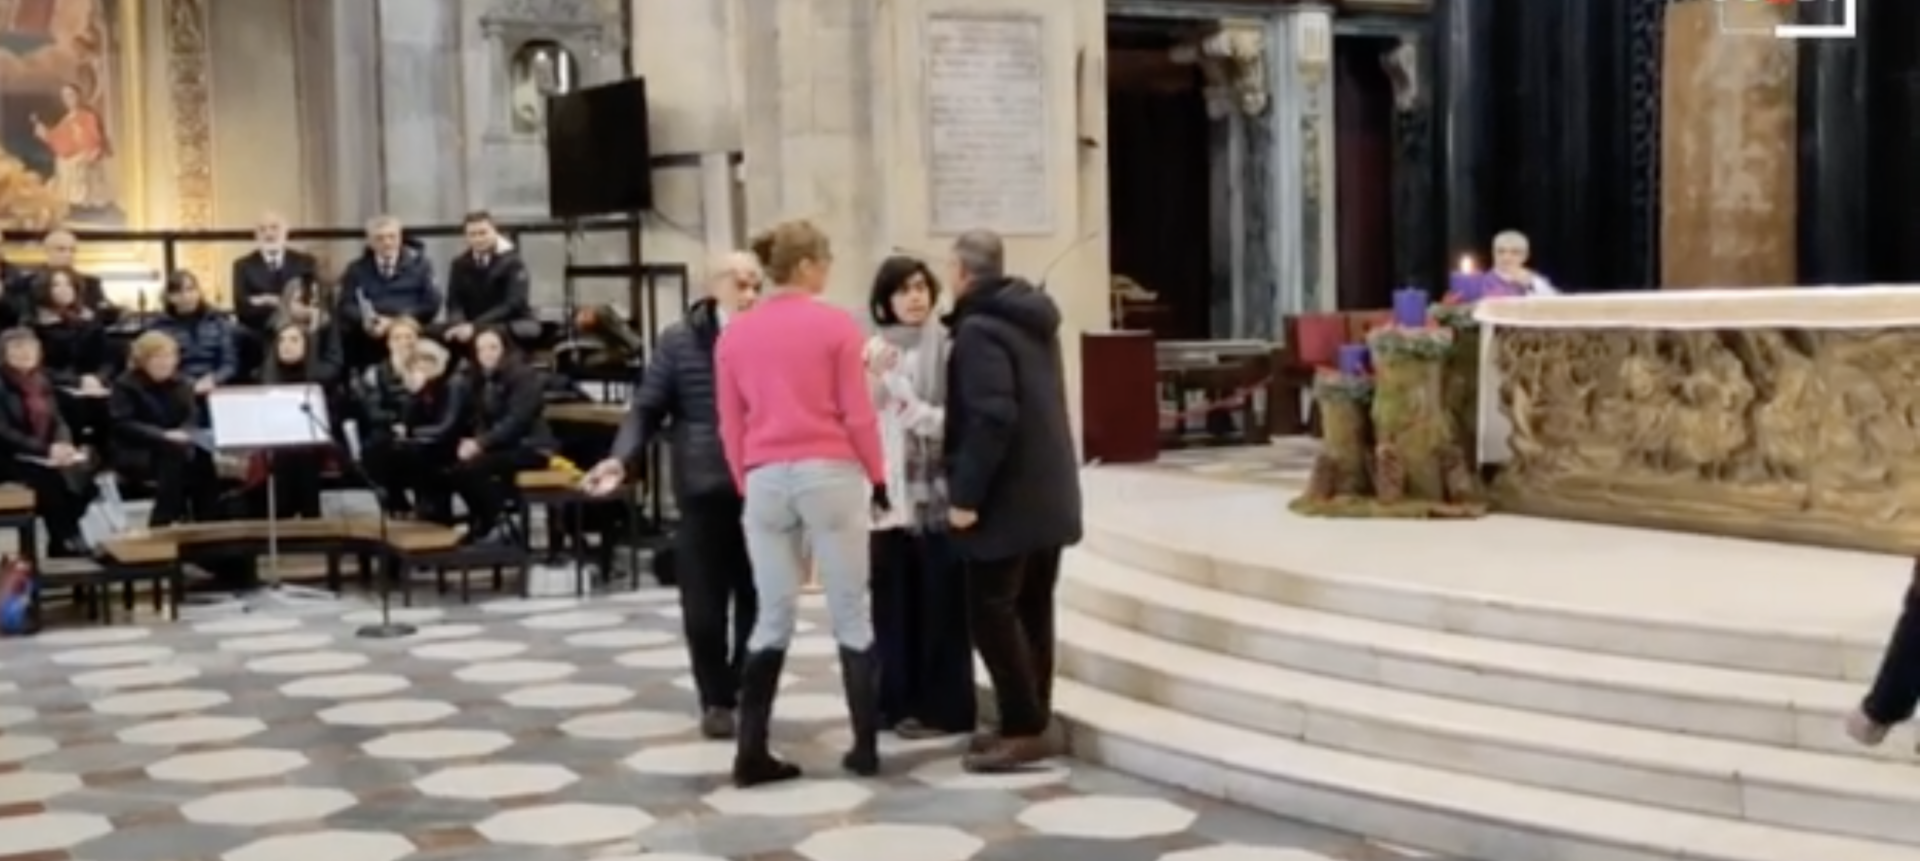 Des fidèles de la cathédrale de Turin ont demandé aux activistes de cesser de perturber la messe | capture d'écran GEDI